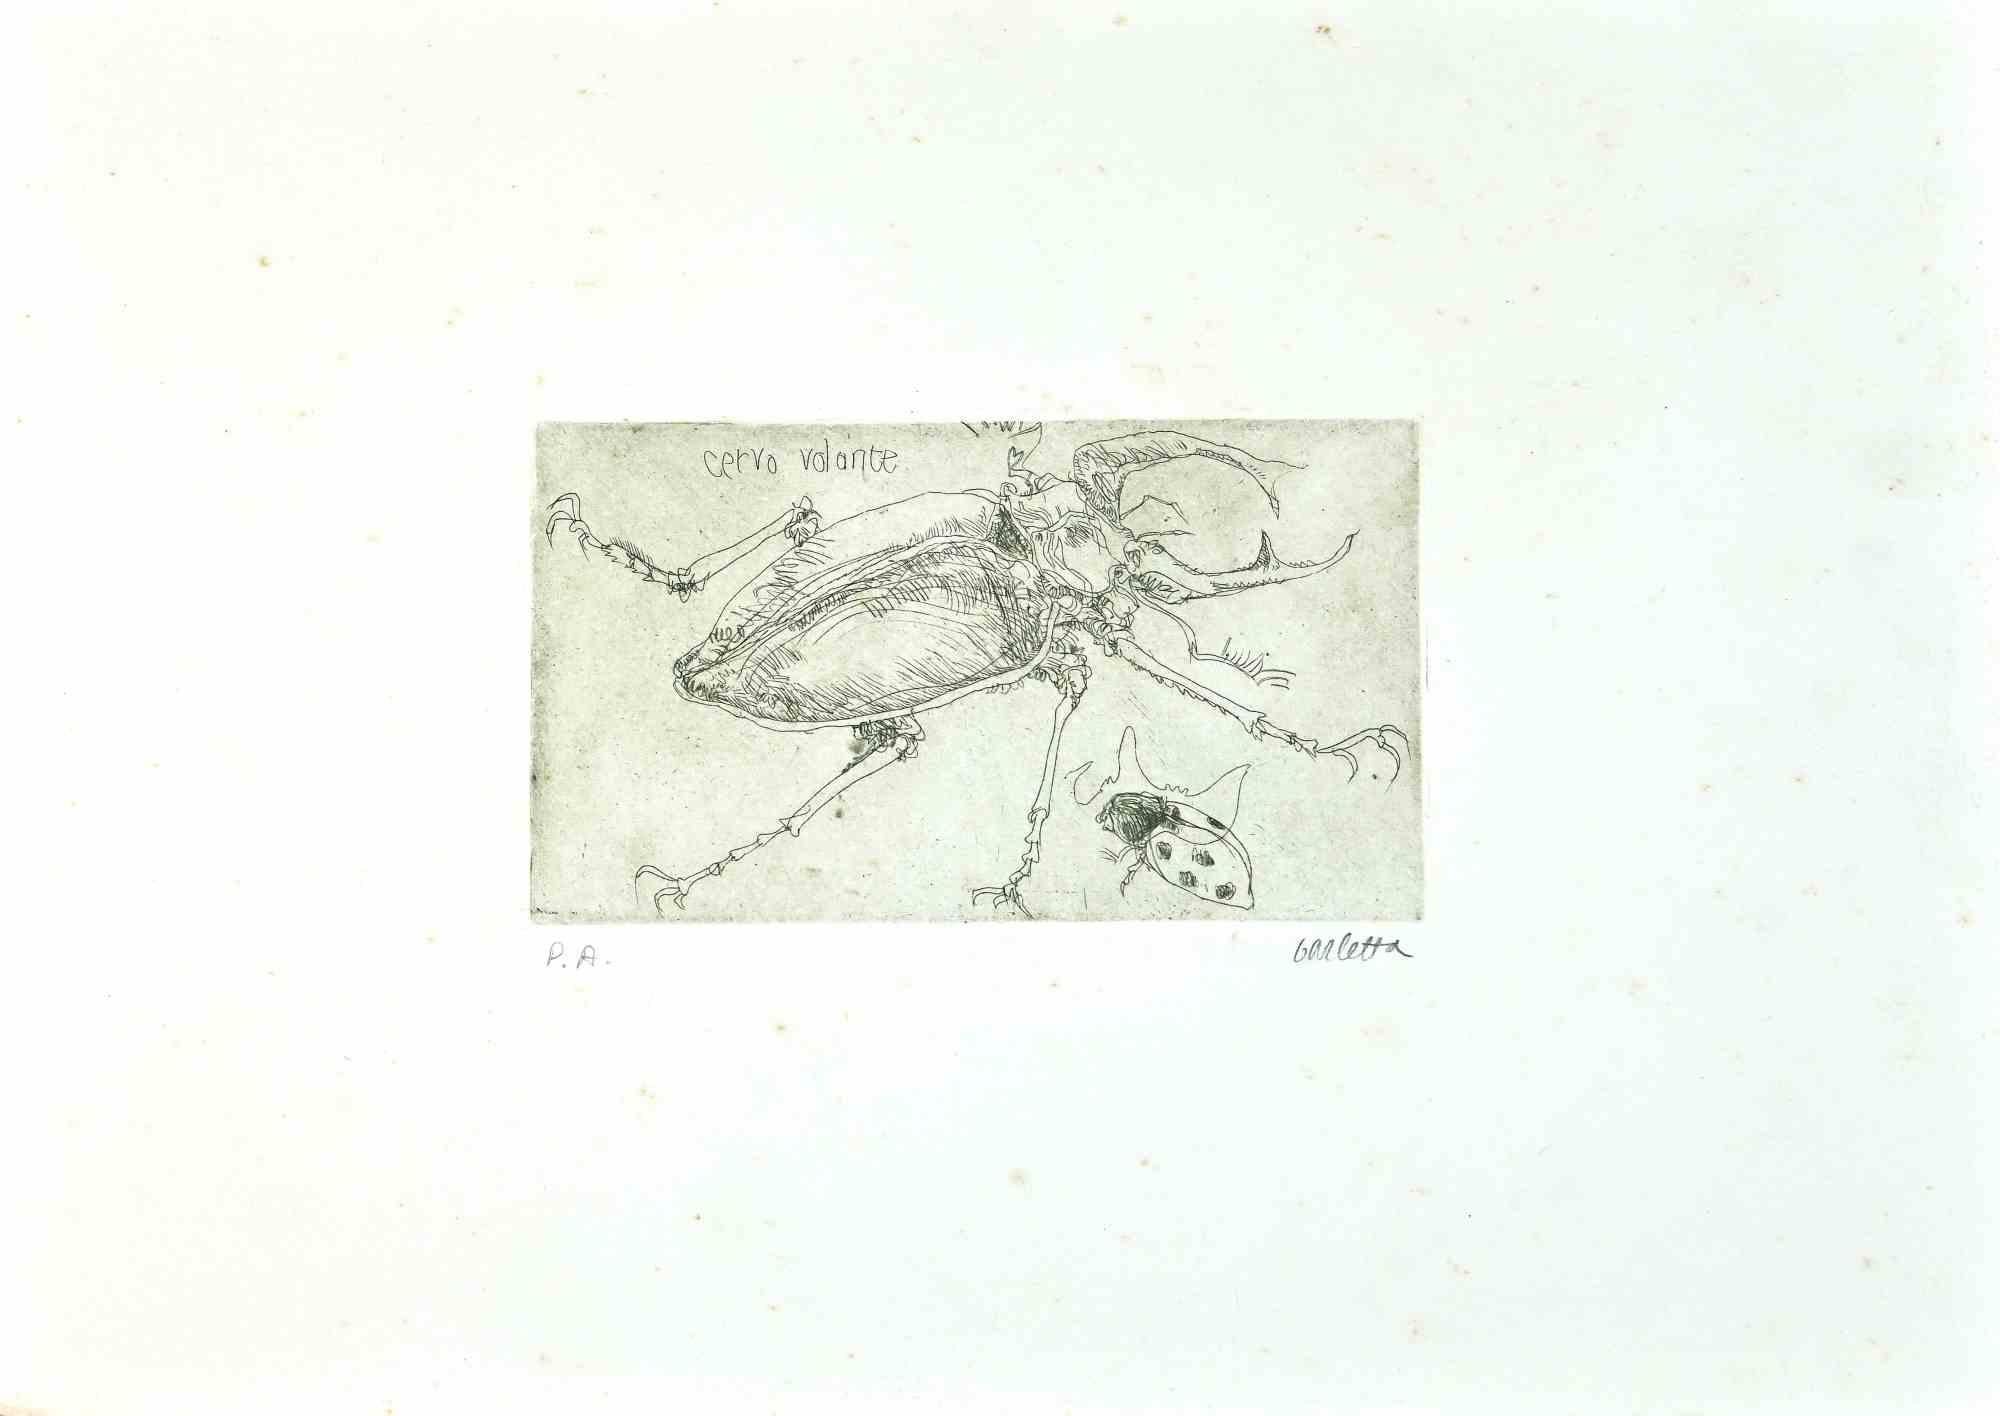 Insectes est une gravure réalisée par Sergio Barletta en 1974.

Signé à la main au crayon en bas à droite.

Preuve d'artiste.

En bonnes conditions. 

Sergio Barletta (1934) est un dessinateur et illustrateur italien qui a également publié des